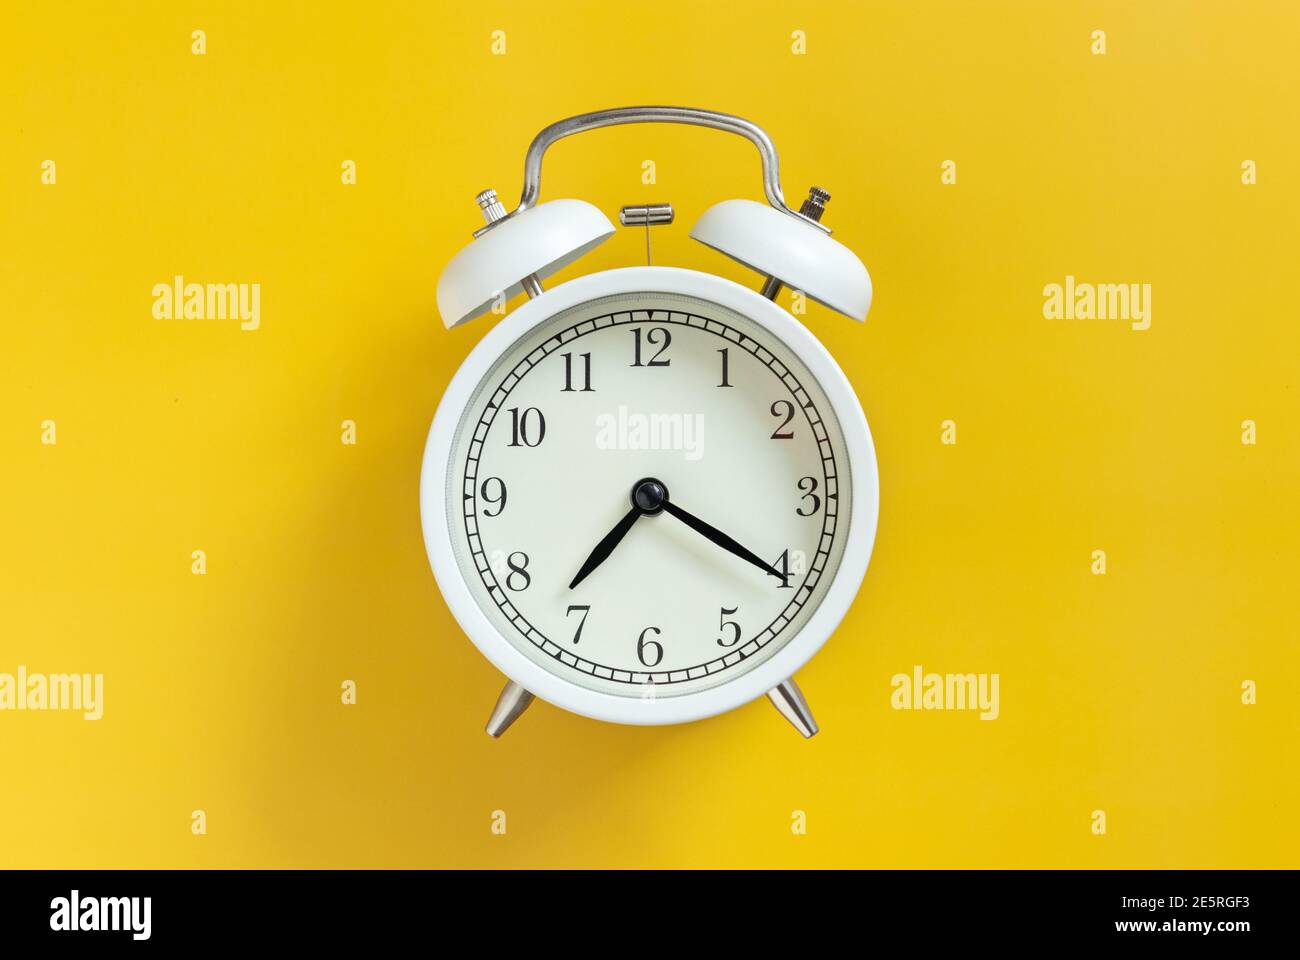 blanco círculo retro clásico reloj despertador analógico con aguja de reloj aislado sobre fondo amarillo vacío con espacio de copia. Foto de stock